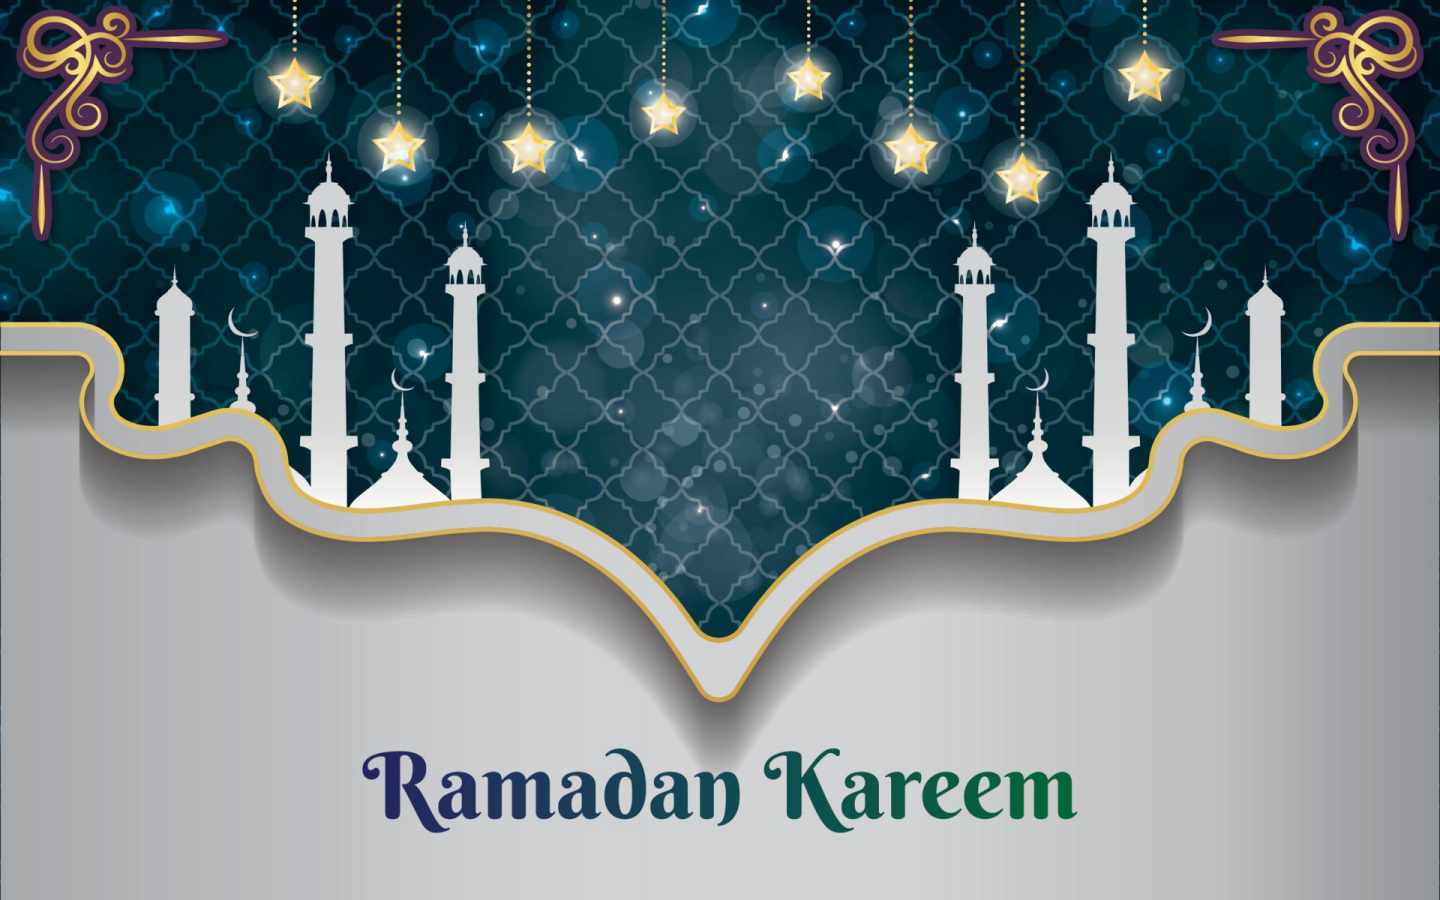 Feiernsie Ramadan Dieses Jahr Stilvoll Mit Diesem Wunderschönen Ramadan-hintergrund.